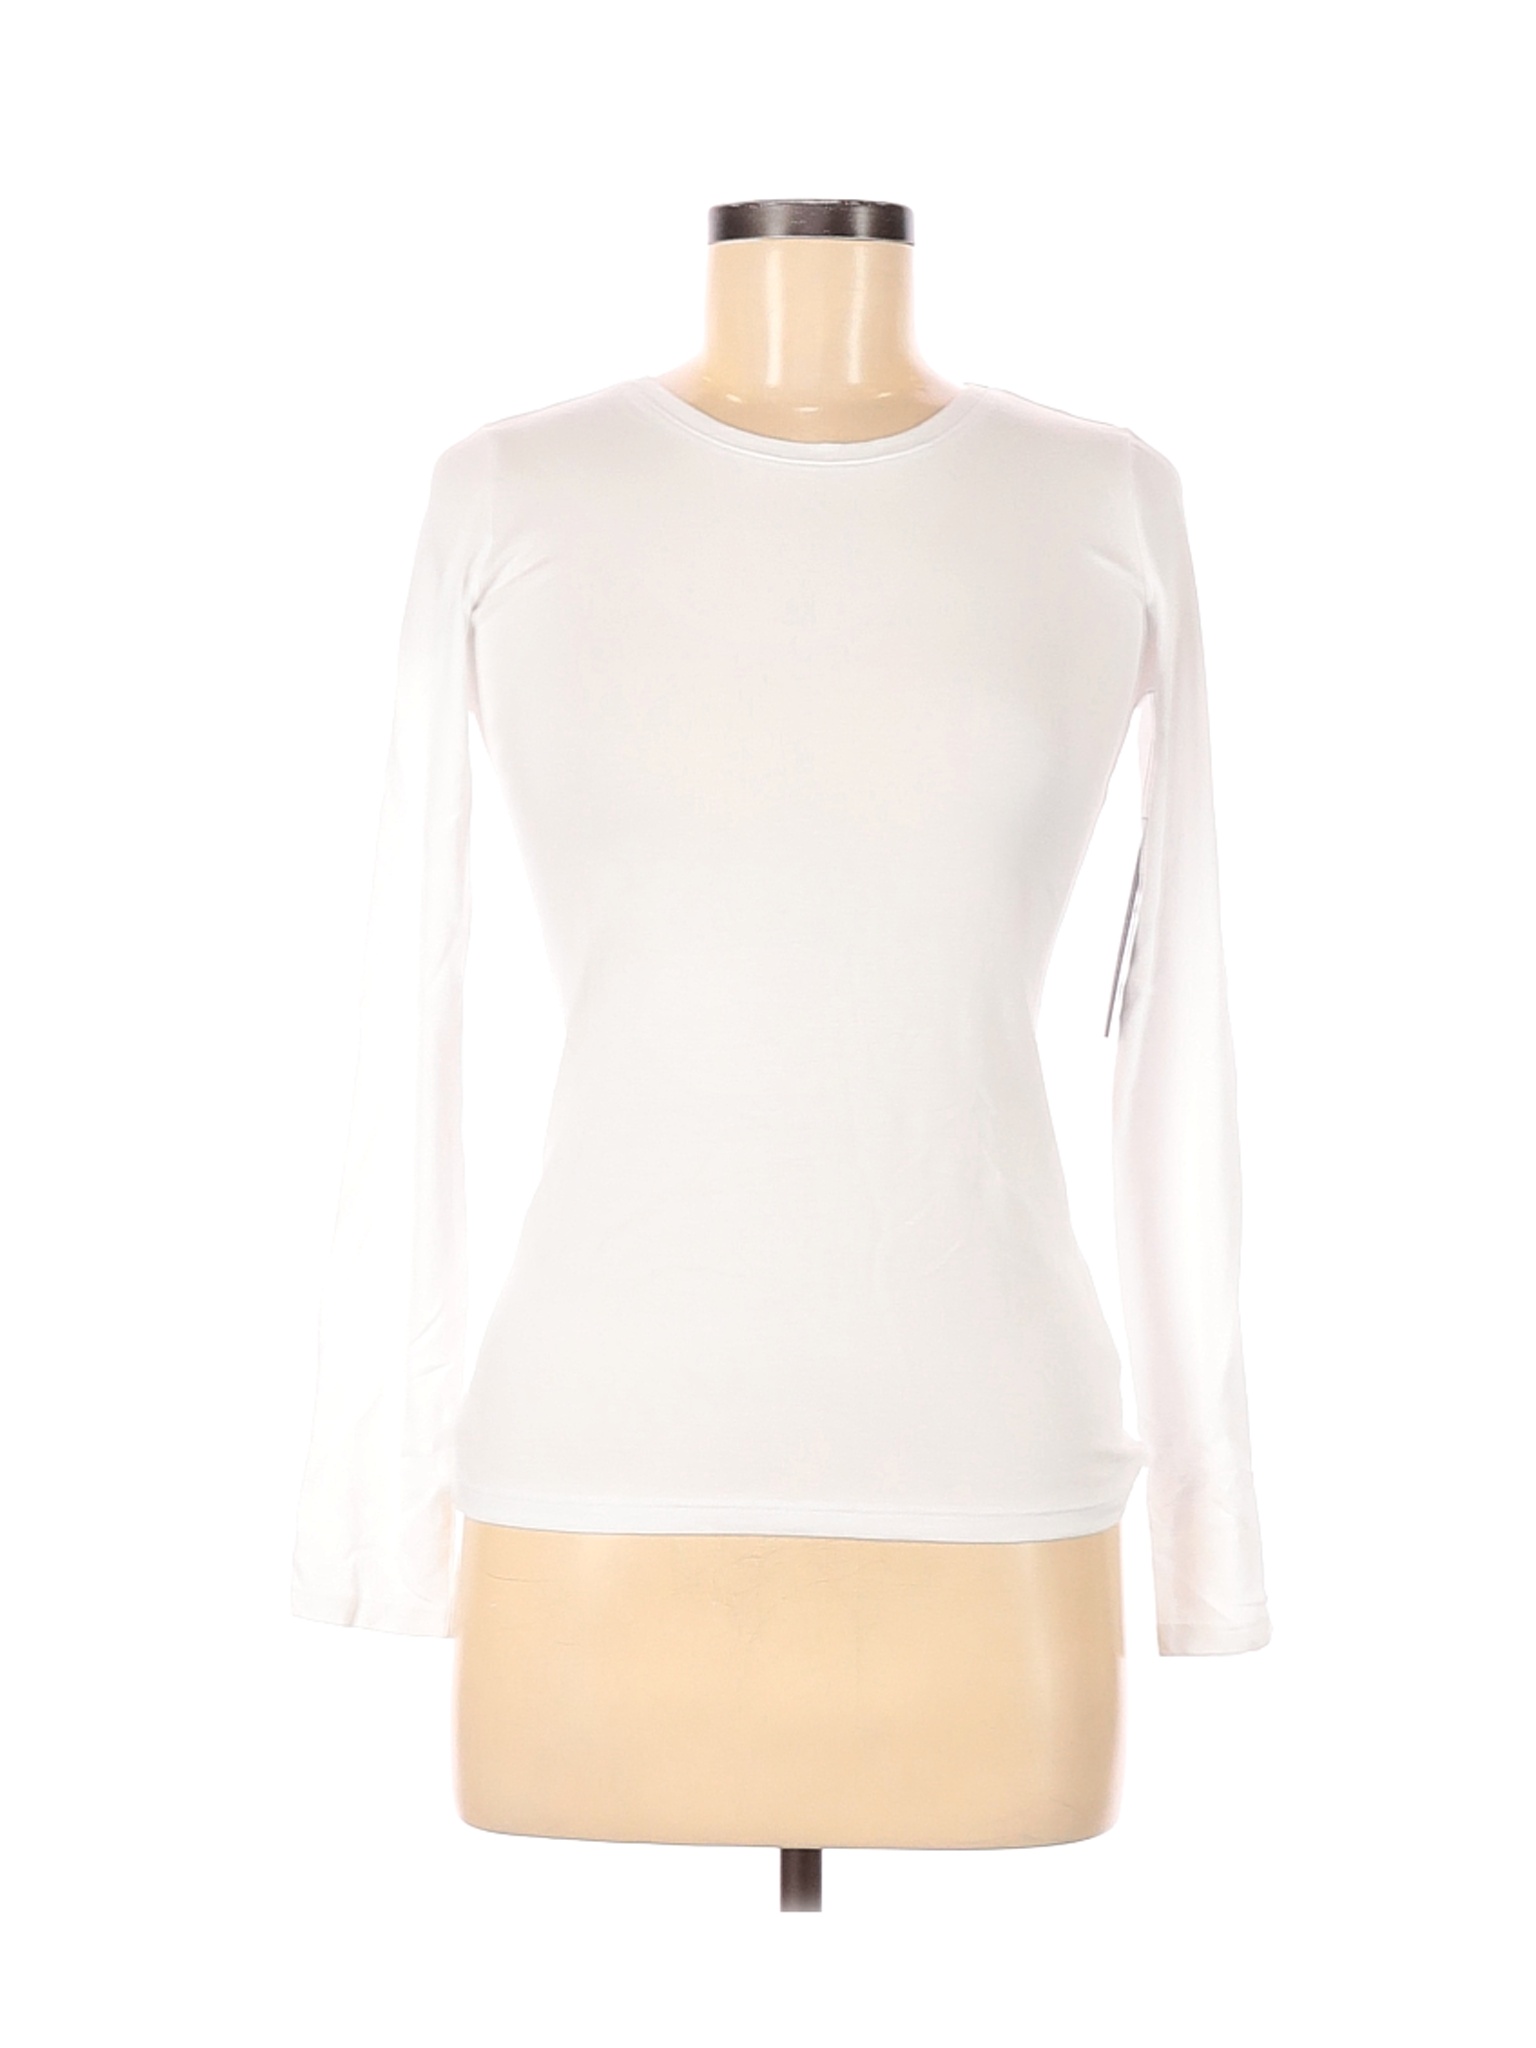 NWT Tahari Women White Long Sleeve T-Shirt XS | eBay